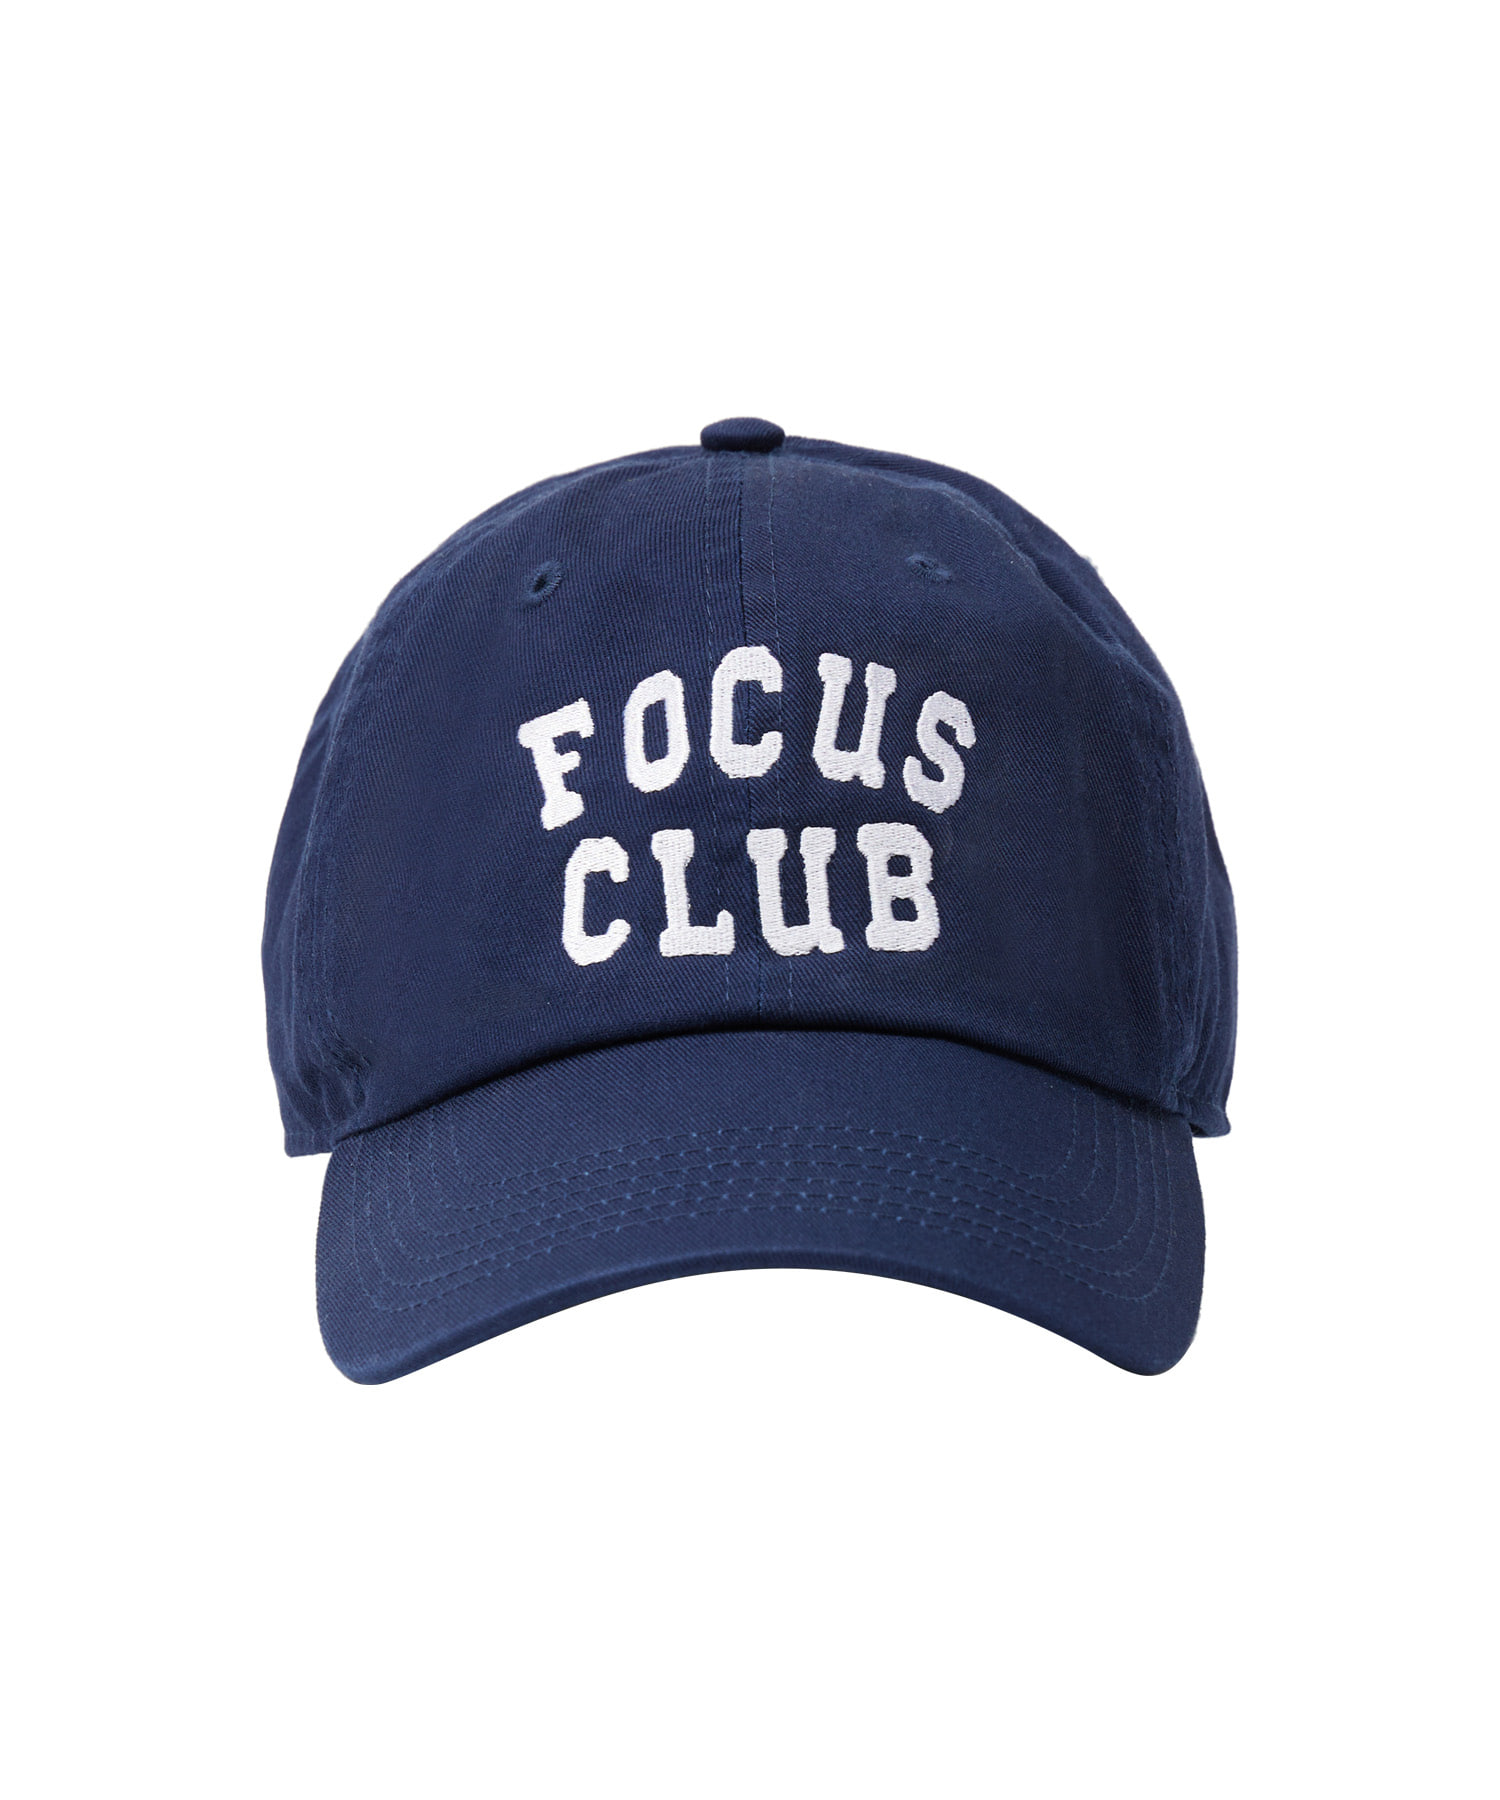 라이프 아카이브 FOCUS CLUB BALL CAP_NAVY 라이프,LIFE, LIFE ARCHIVE,볼캡,라이프볼캡,ballcap